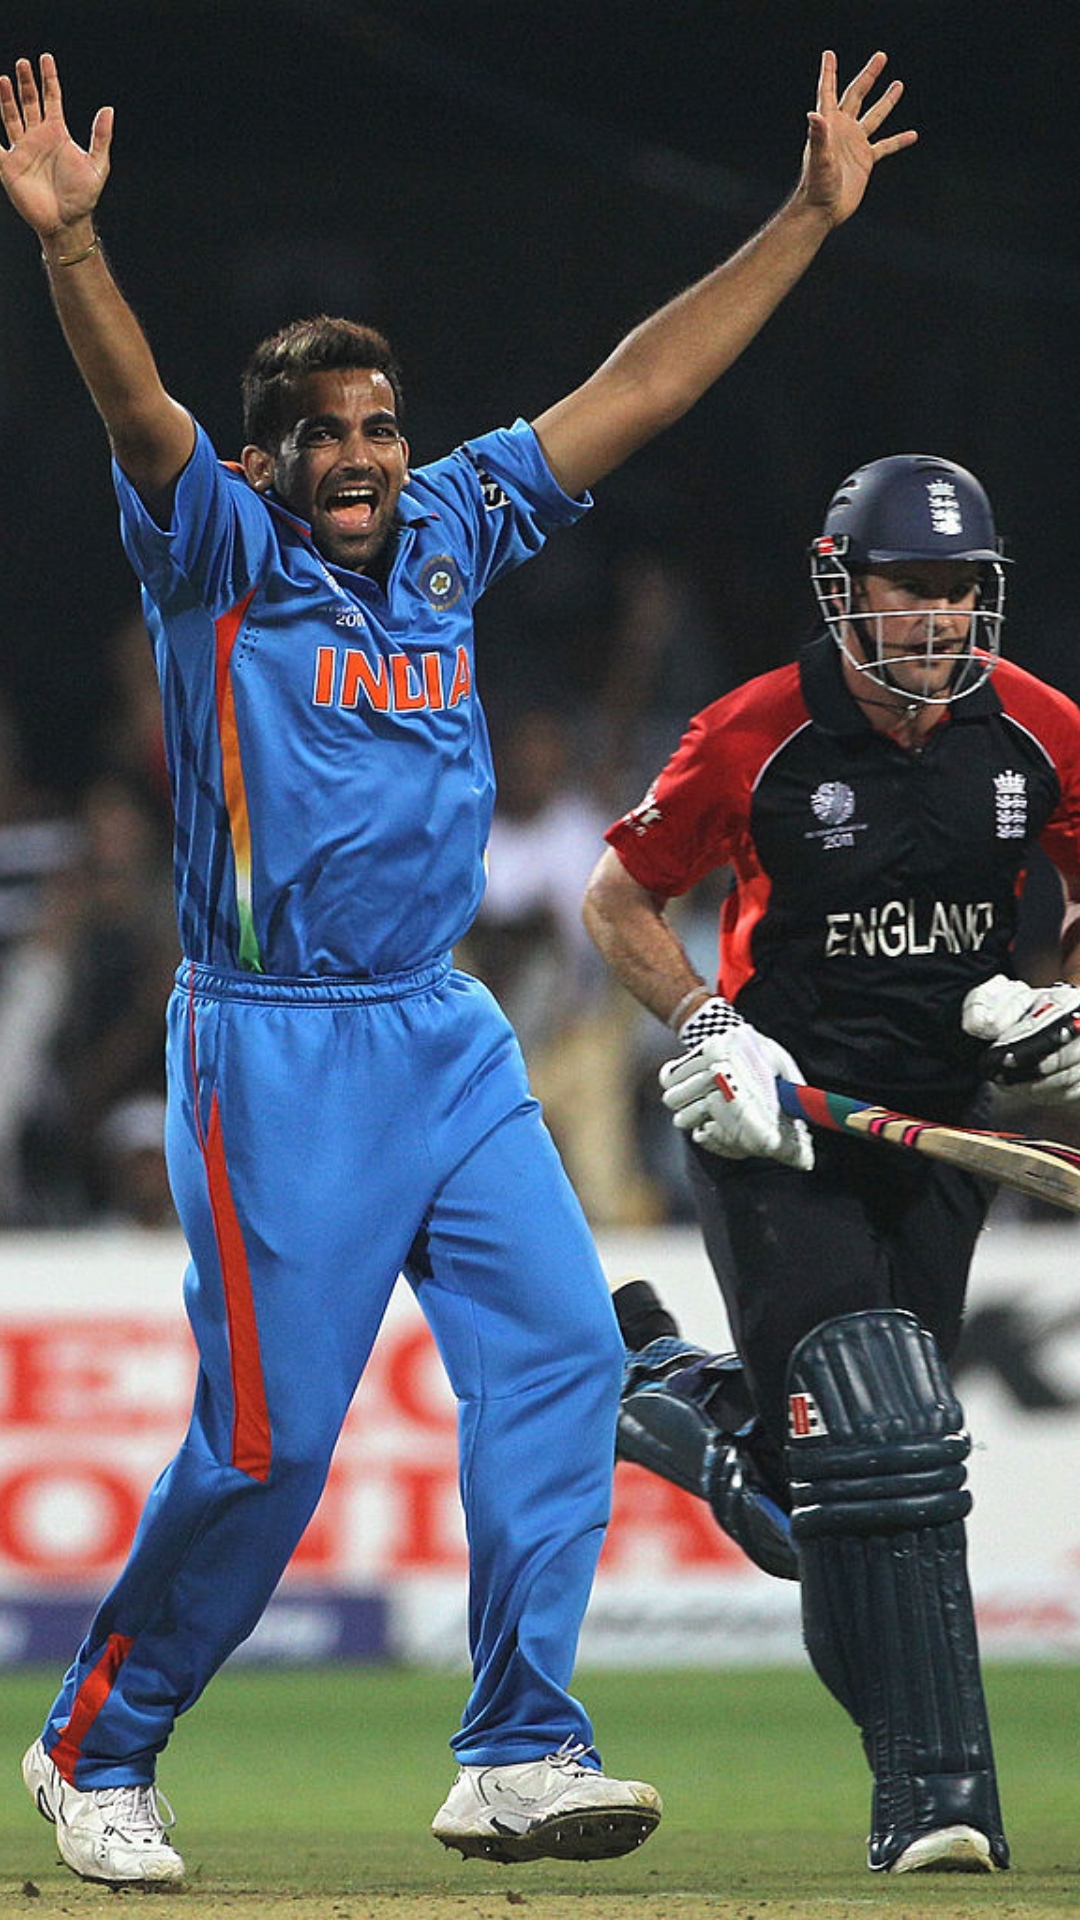 वनडे वर्ल्ड कप में पहले ही ओवर में सबसे ज्यादा विकेट लेने वाले स्टार बॉलर्स की लिस्ट